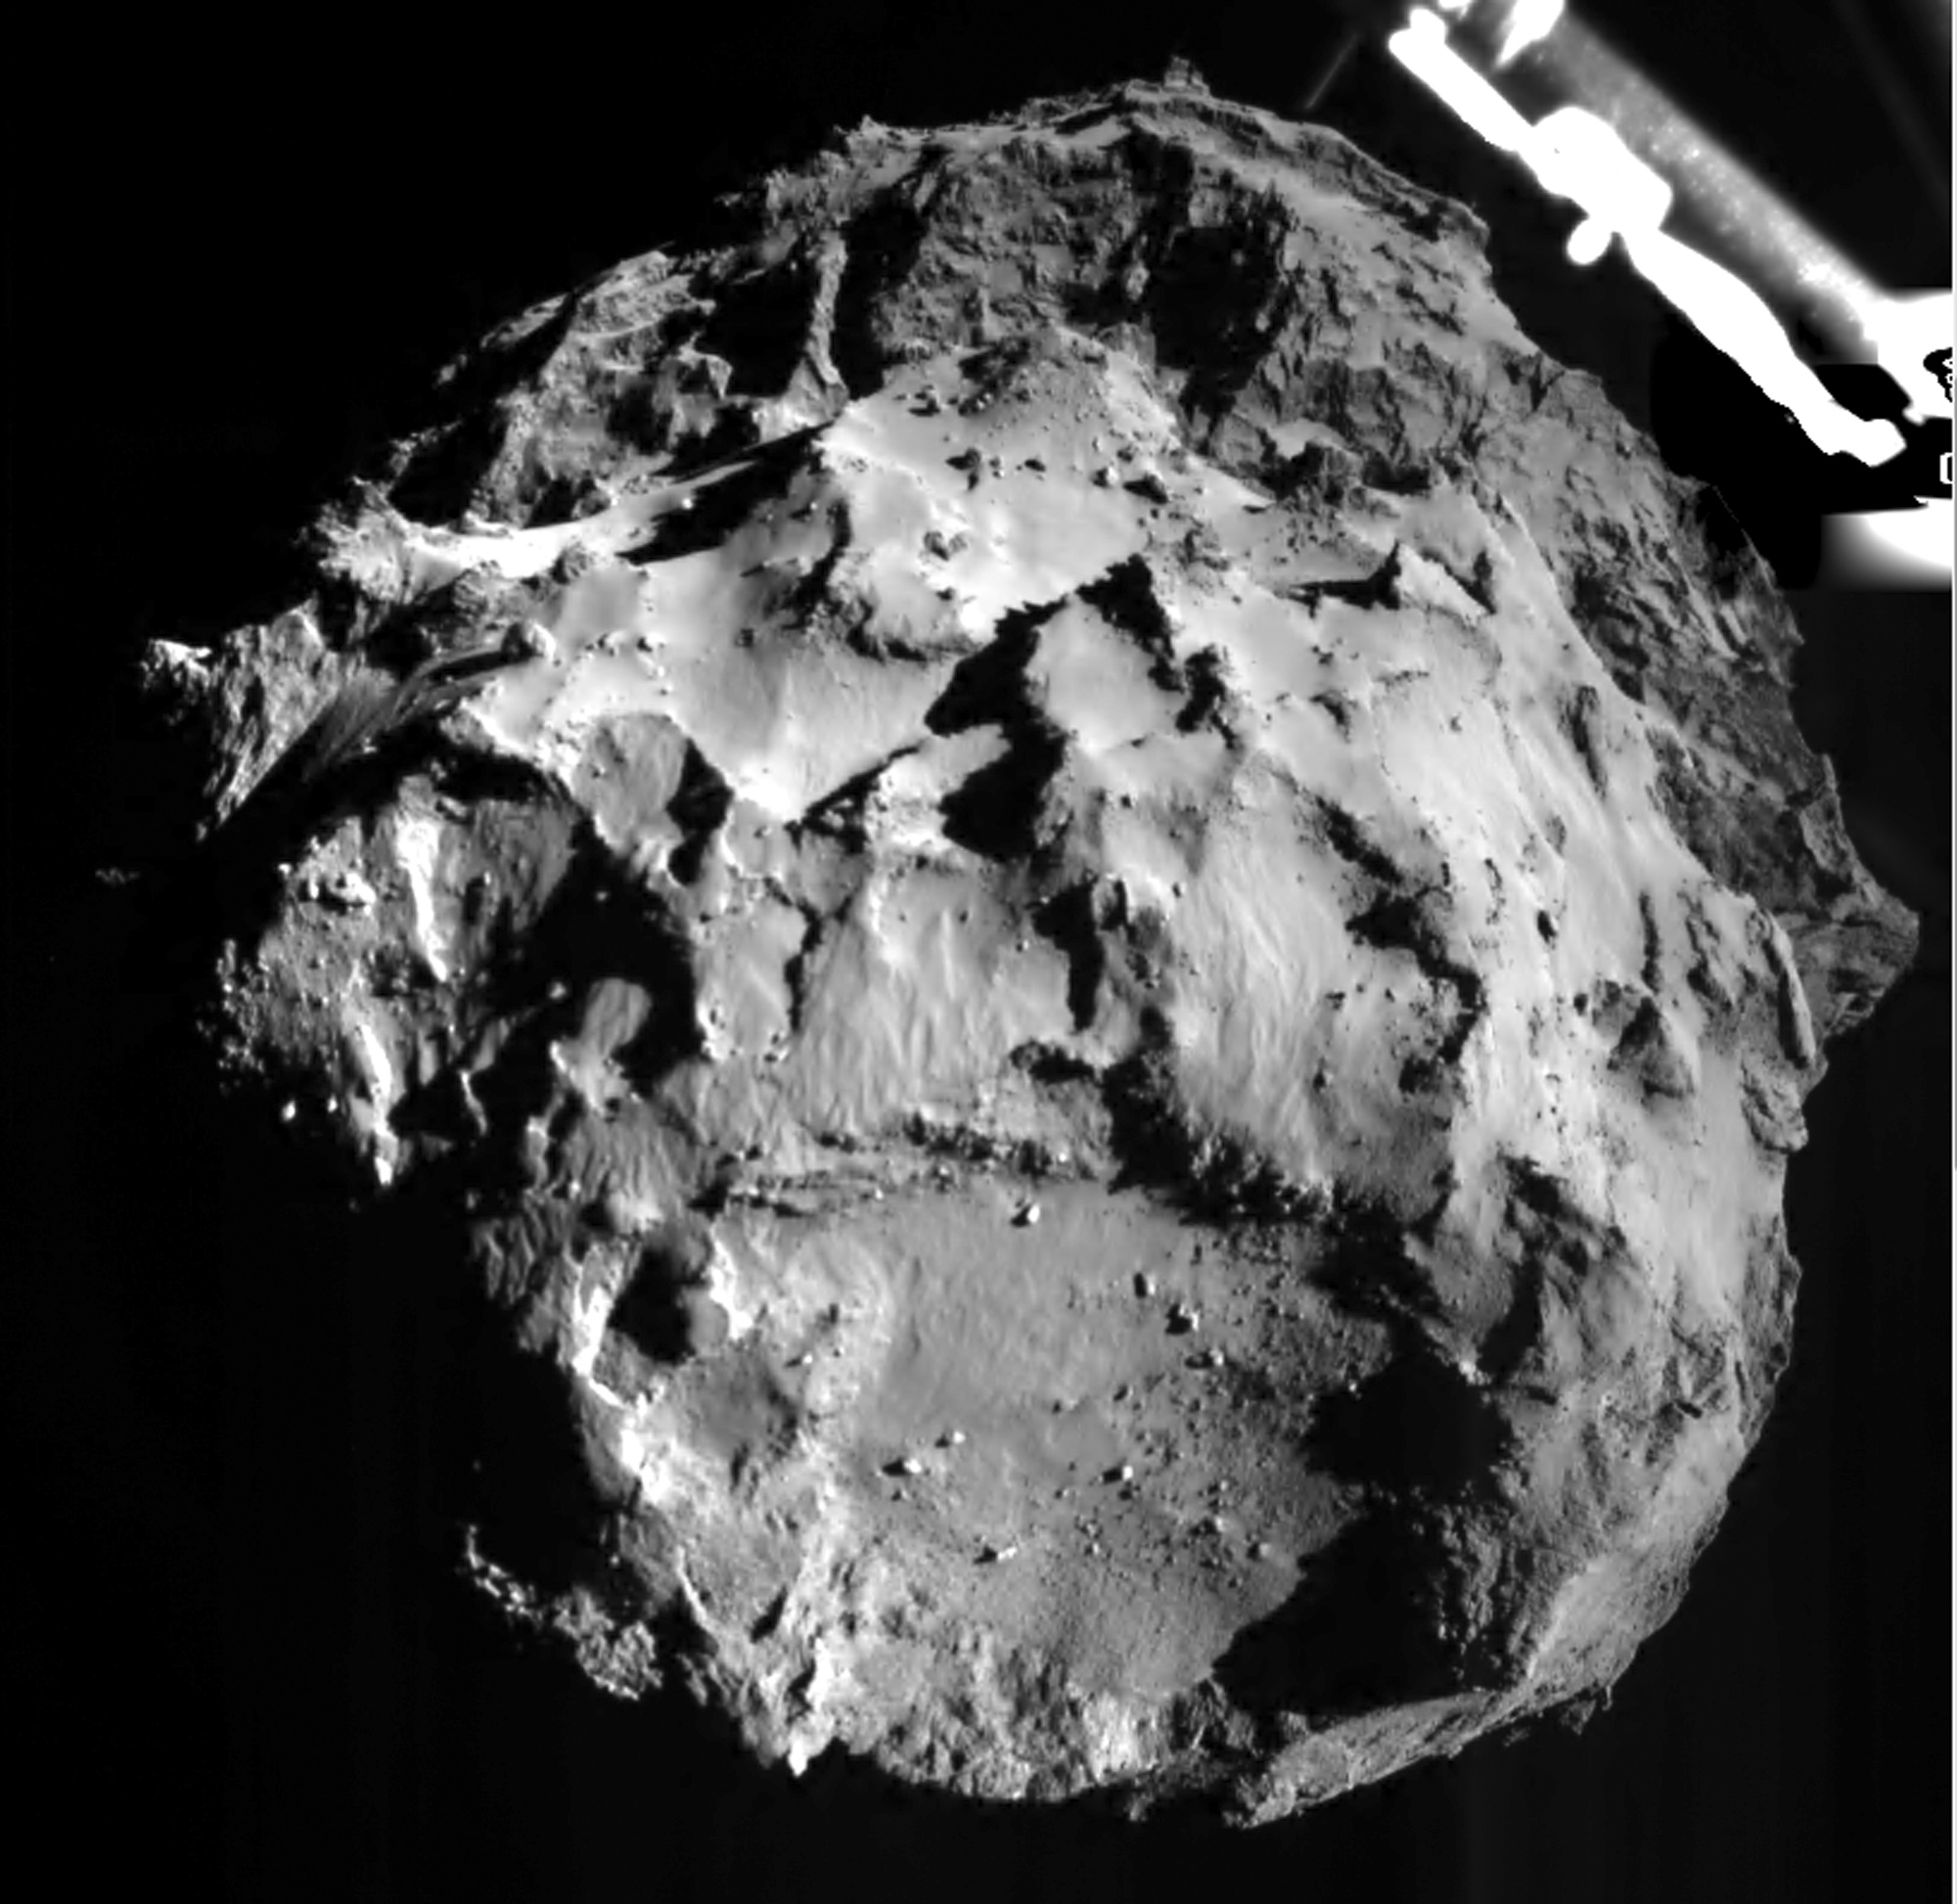 Imagen divulgada por la Agencia Espacial Europea el miércoles 12 de noviembre de 2014 durante el descenso de la sonda Philae que muestra la superficie del cometa 67P/Churyumov-Gerasimenko desde una distancia de 3 kilómetros. (Foto AP/ESA)